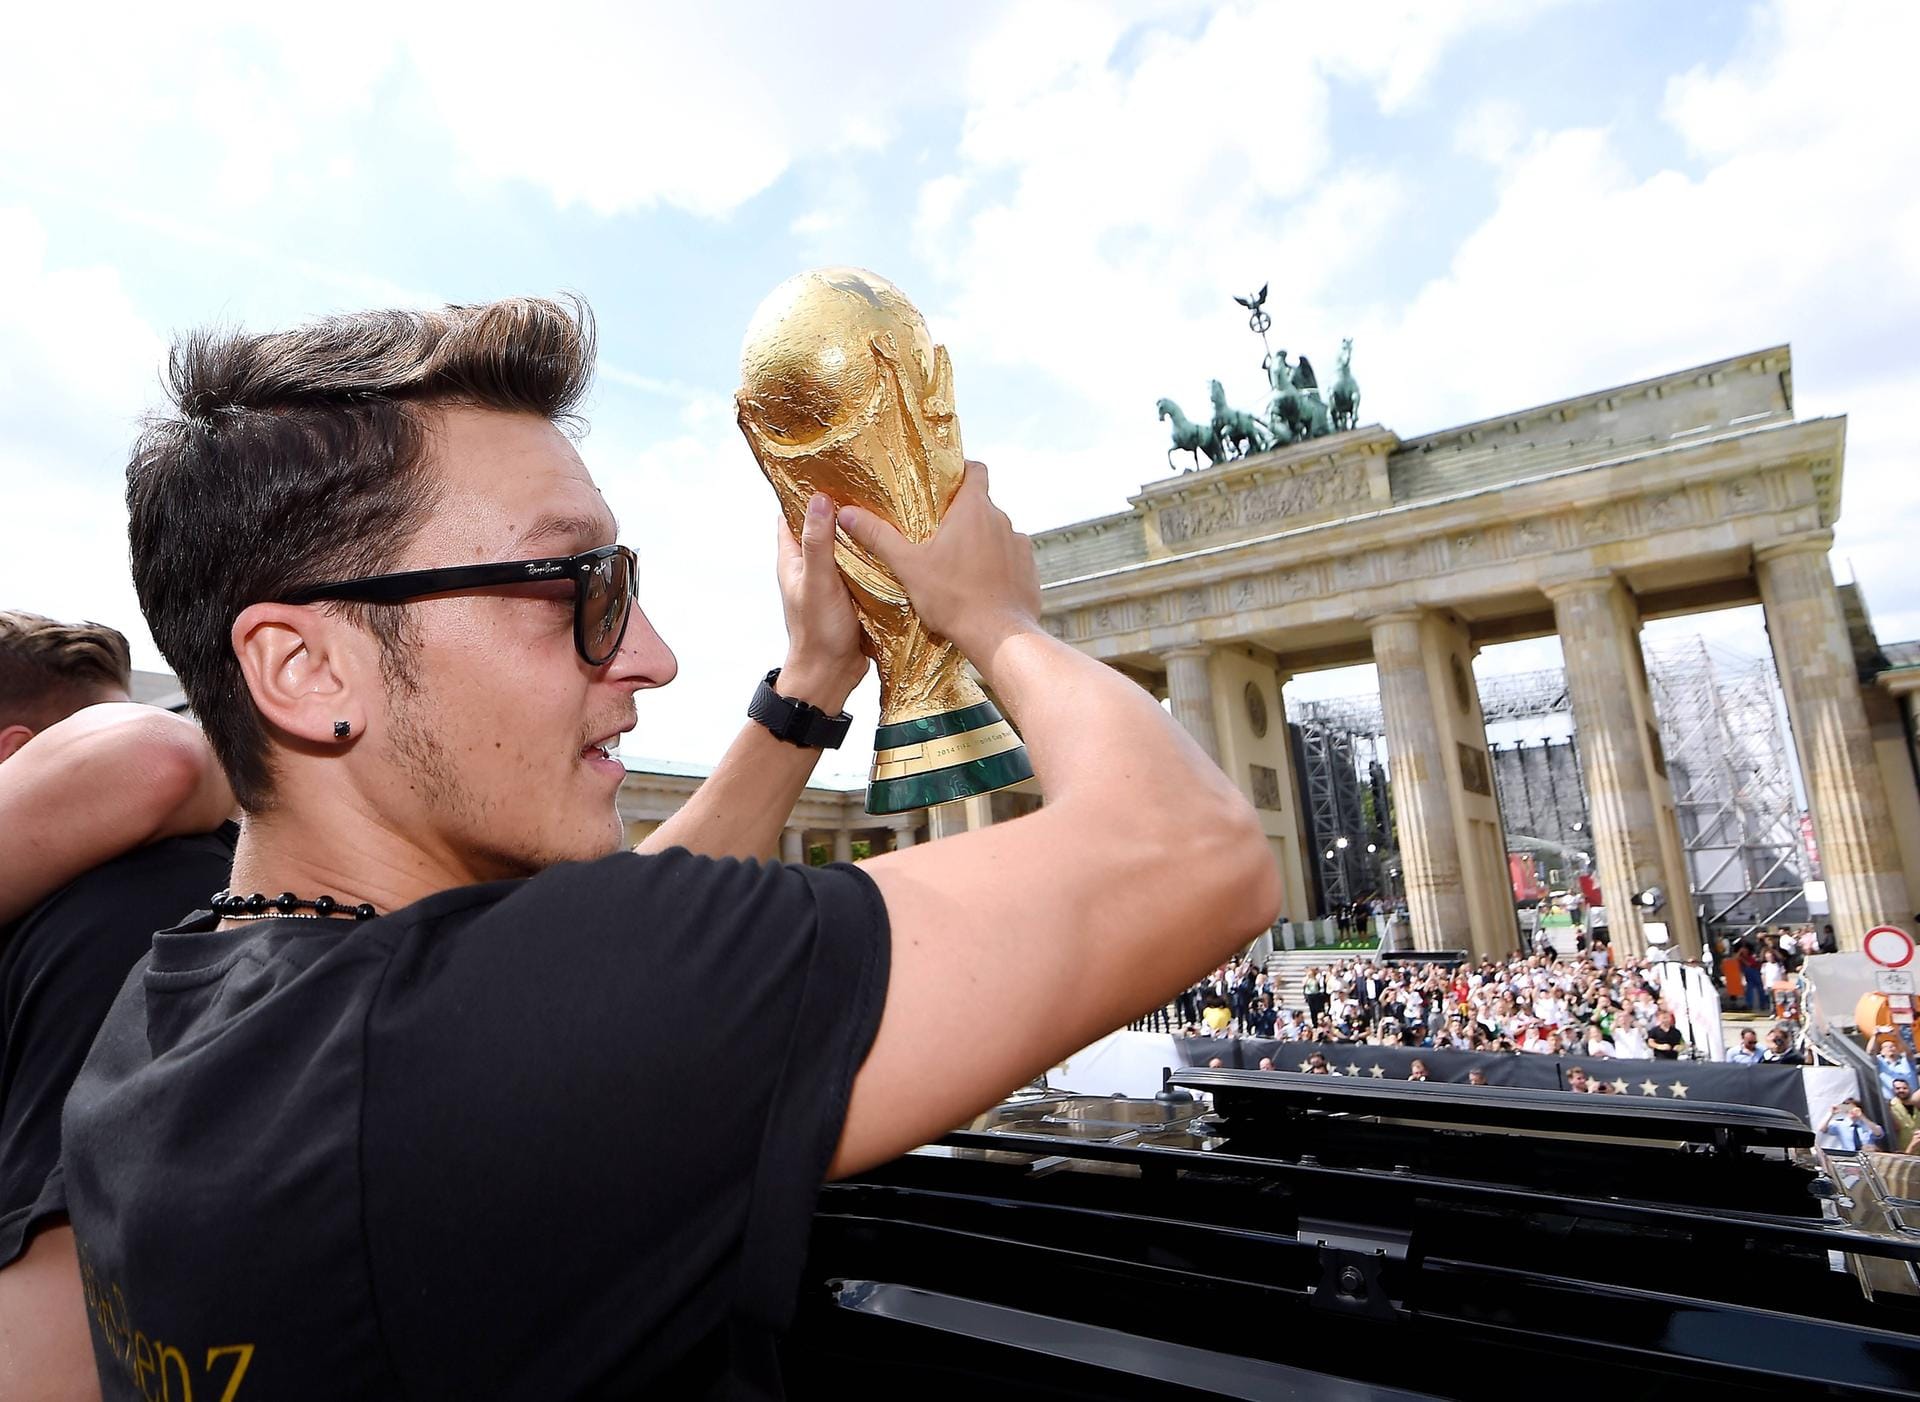 ...holte er mit der DFB-Elf den WM-Titel – und feierte diesen gebührend mit den Fans am Brandenburger Tor in Berlin. Vier Jahre später dann der unschöne Abschied von der Nationalmannschaft. Nach dem Vorrundenaus in Russland beendete Özil seine Karriere im DFB-Dress – und brach auch mit Trainer Joachim Löw.